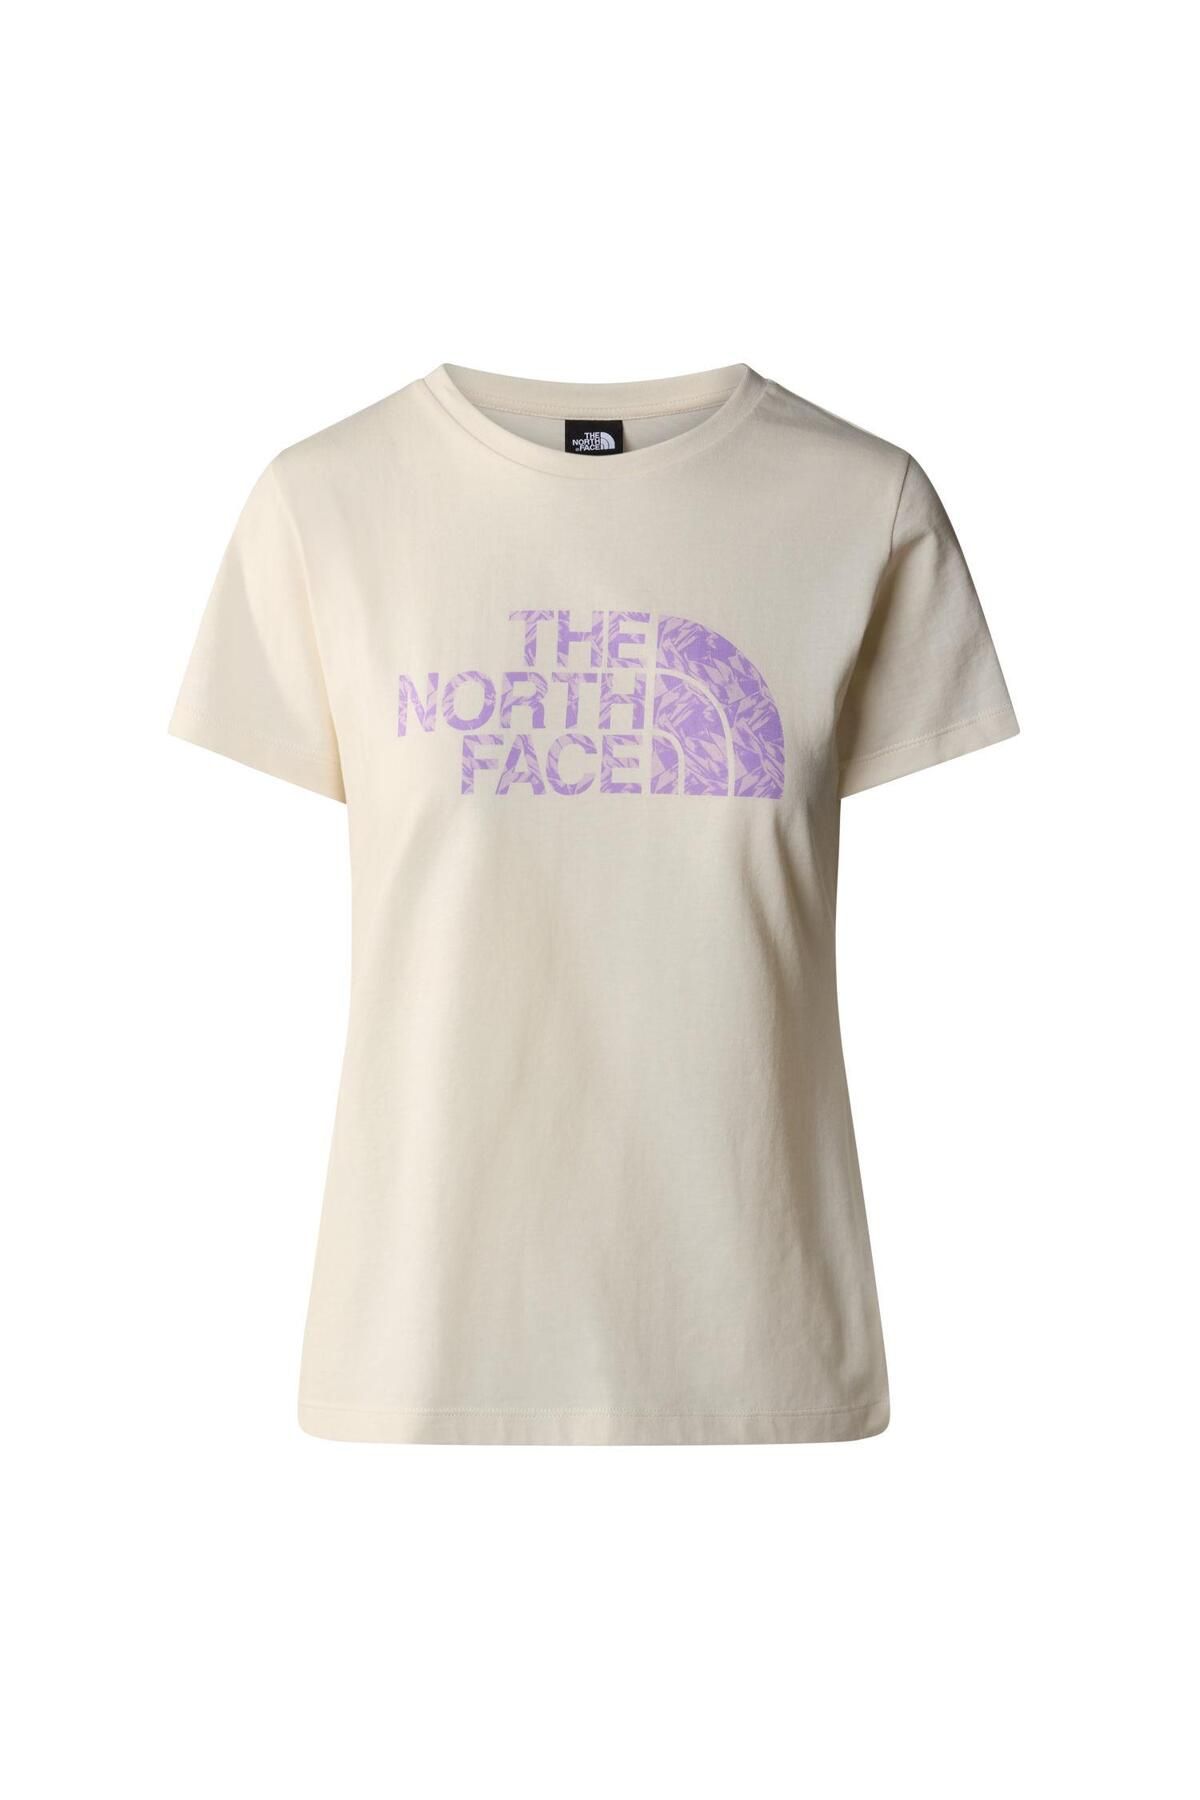 The North Face W S/s Easy Tee Kadın T-shirt Nf0a87n6yfo1 Beyaz-m